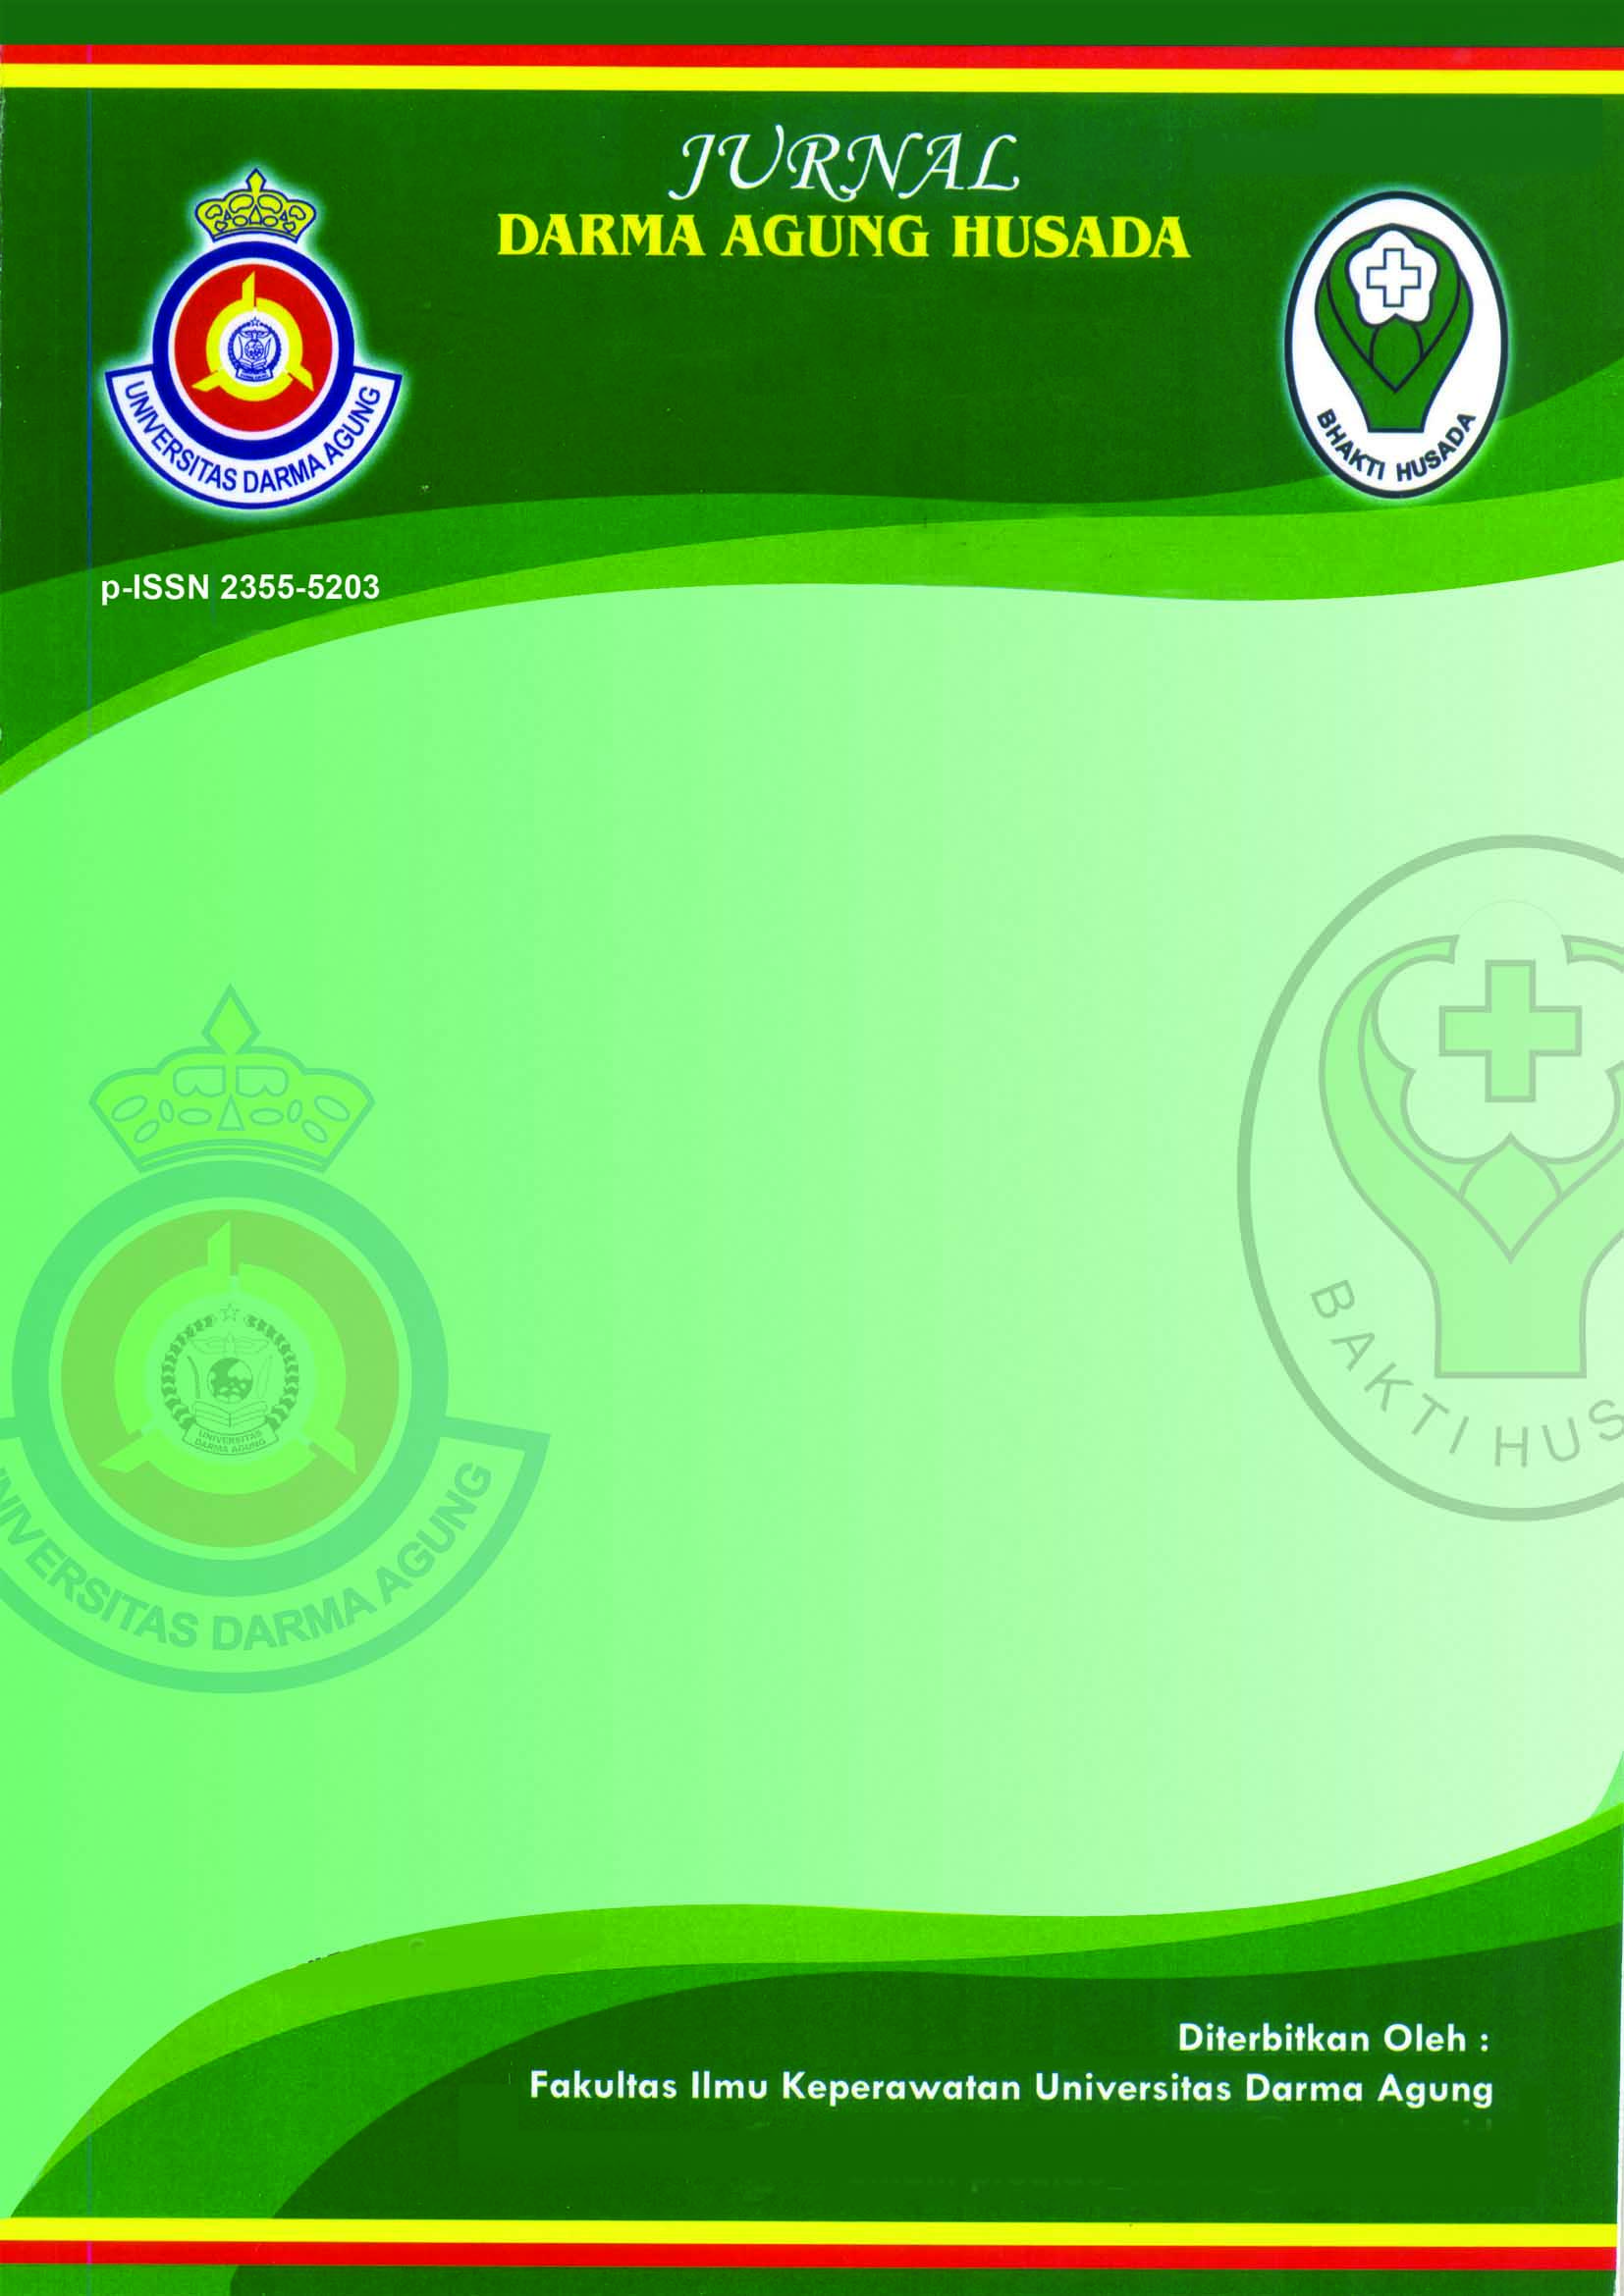 Detail Download Logo Darma Agung Nomer 12